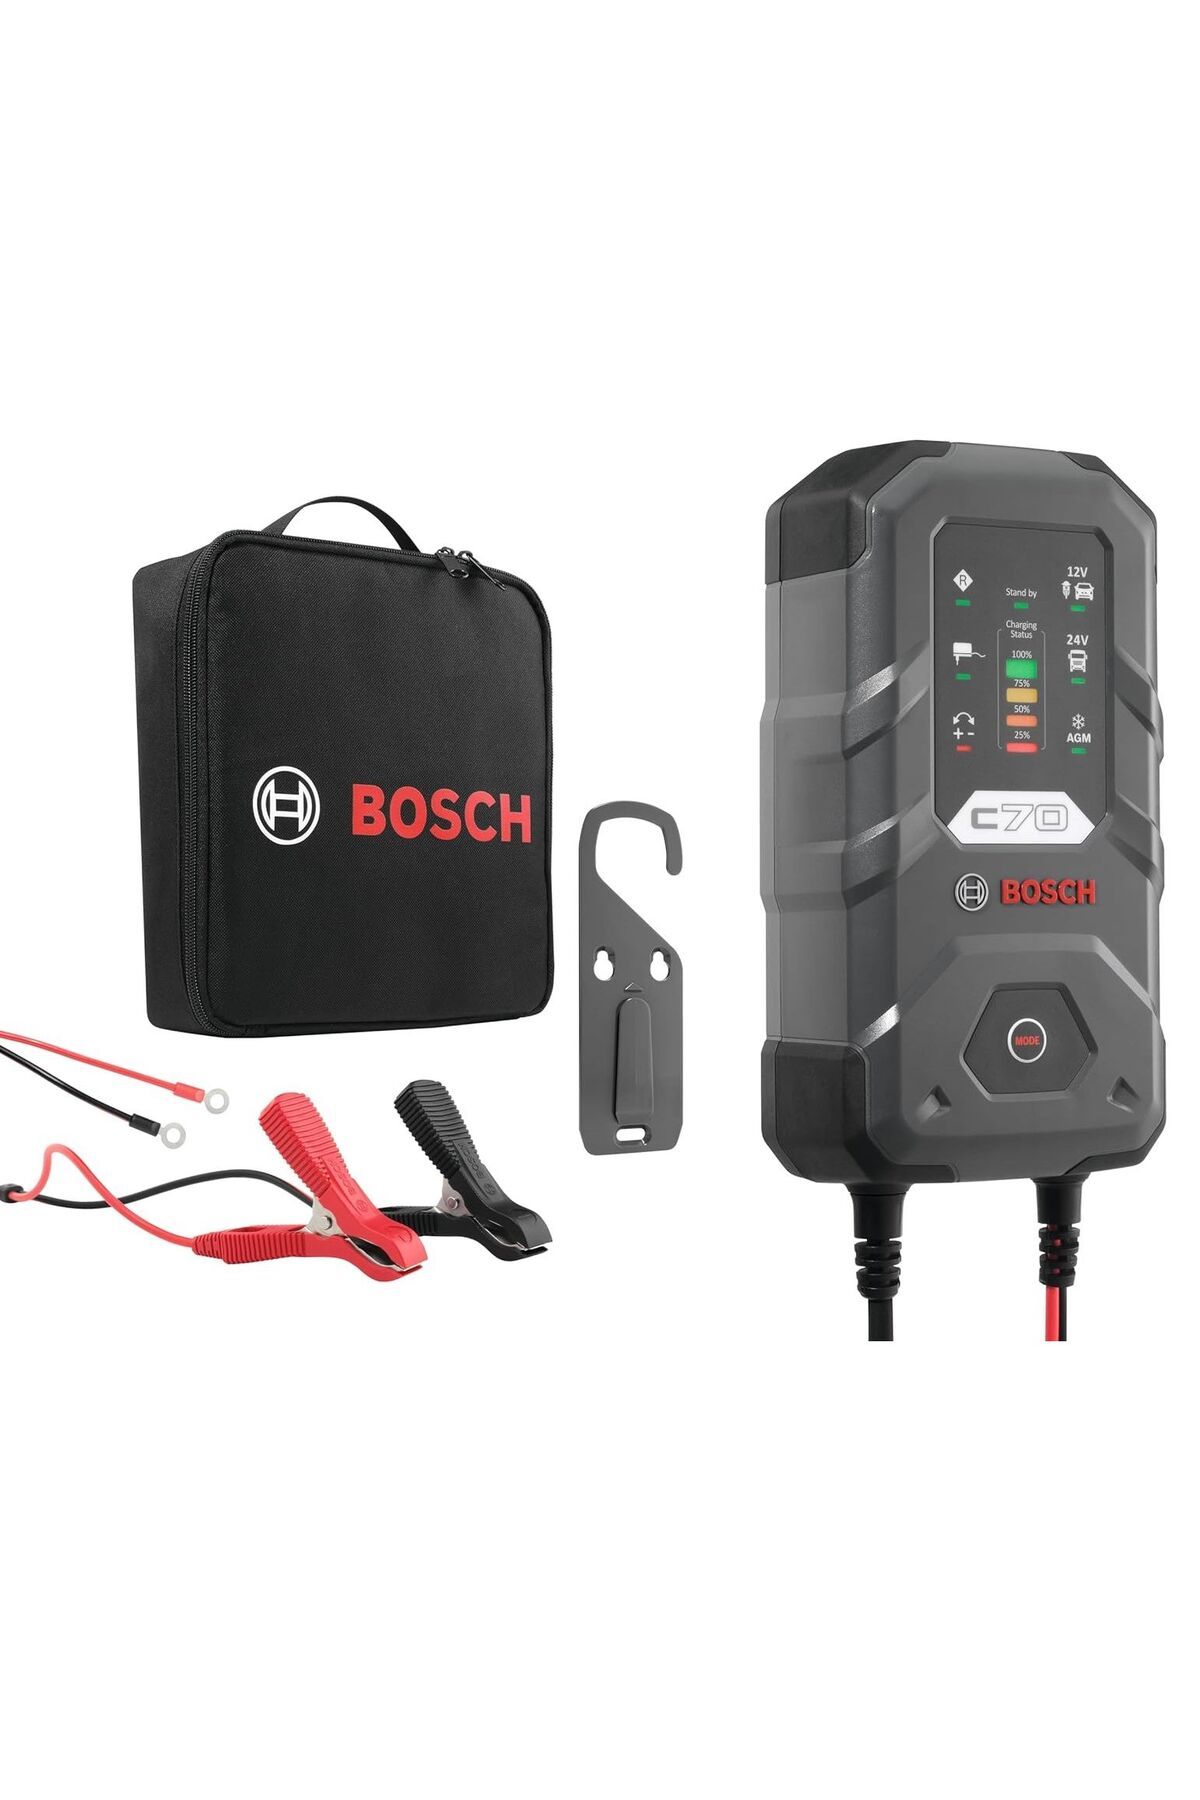 Bosch C70 (C7) 12/24V 10A Akü Şarj Cihazı